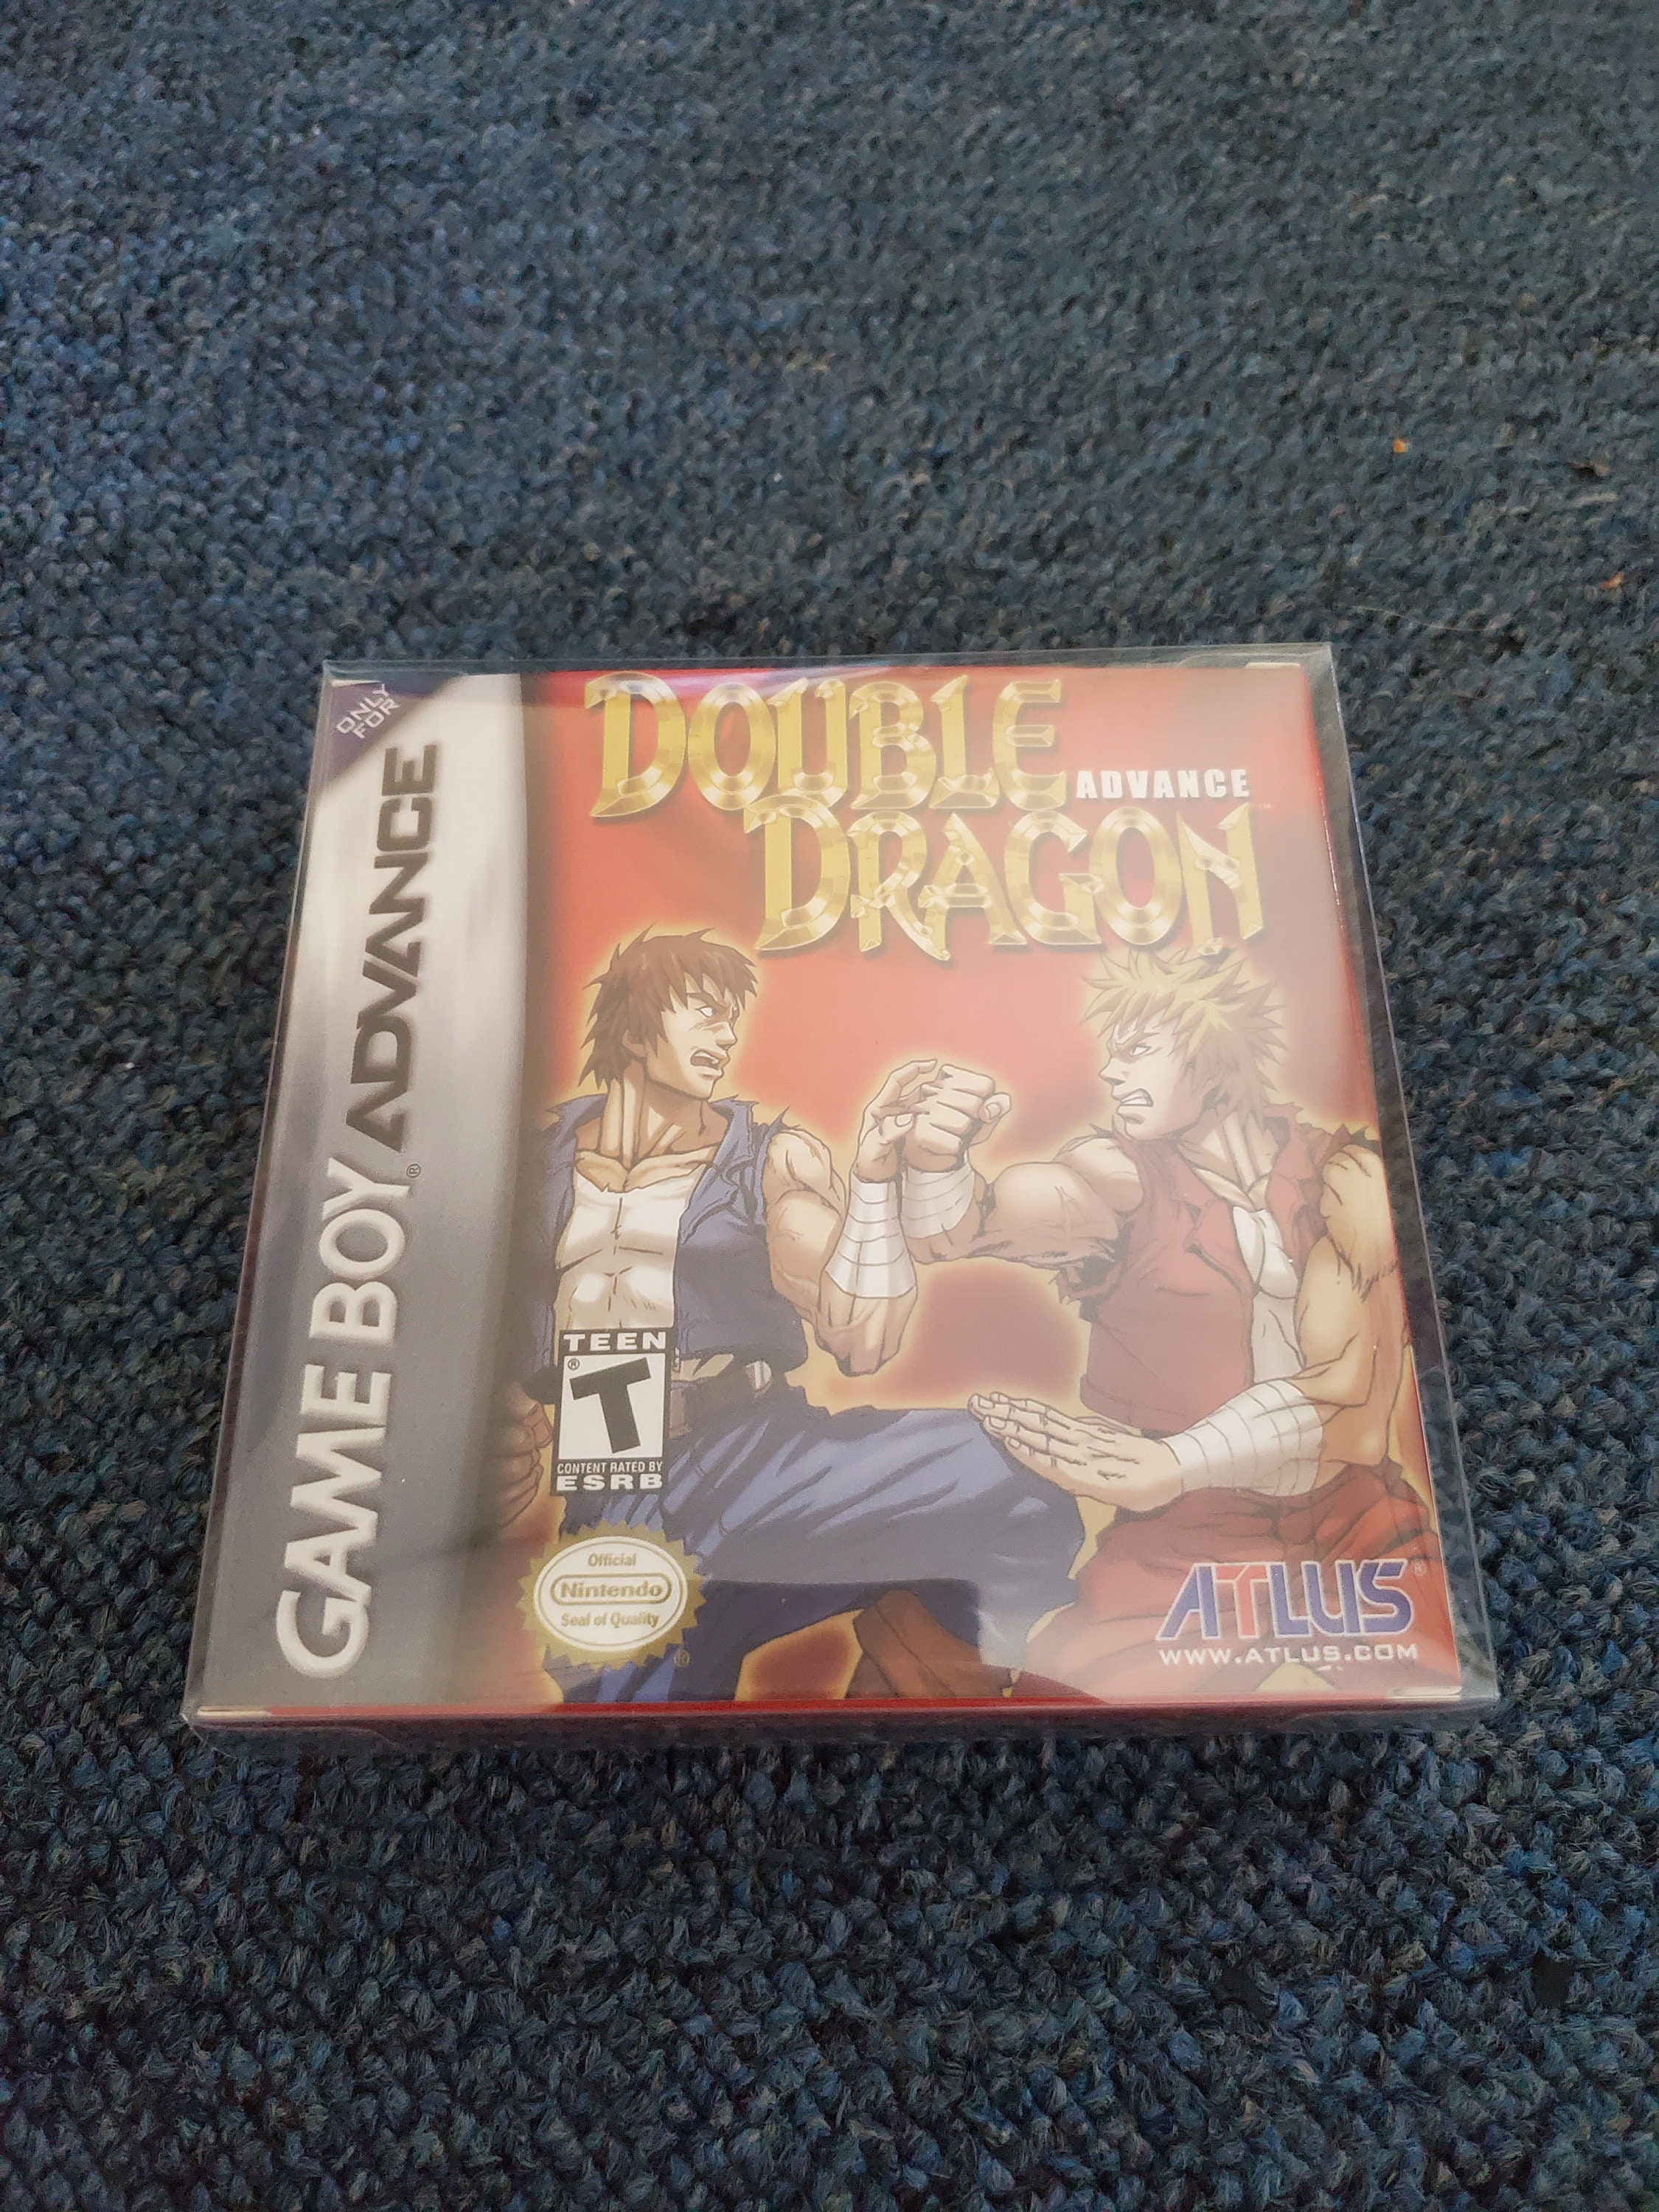 Double Dragon Advance (Nintendo Game Boy Advance) GBA